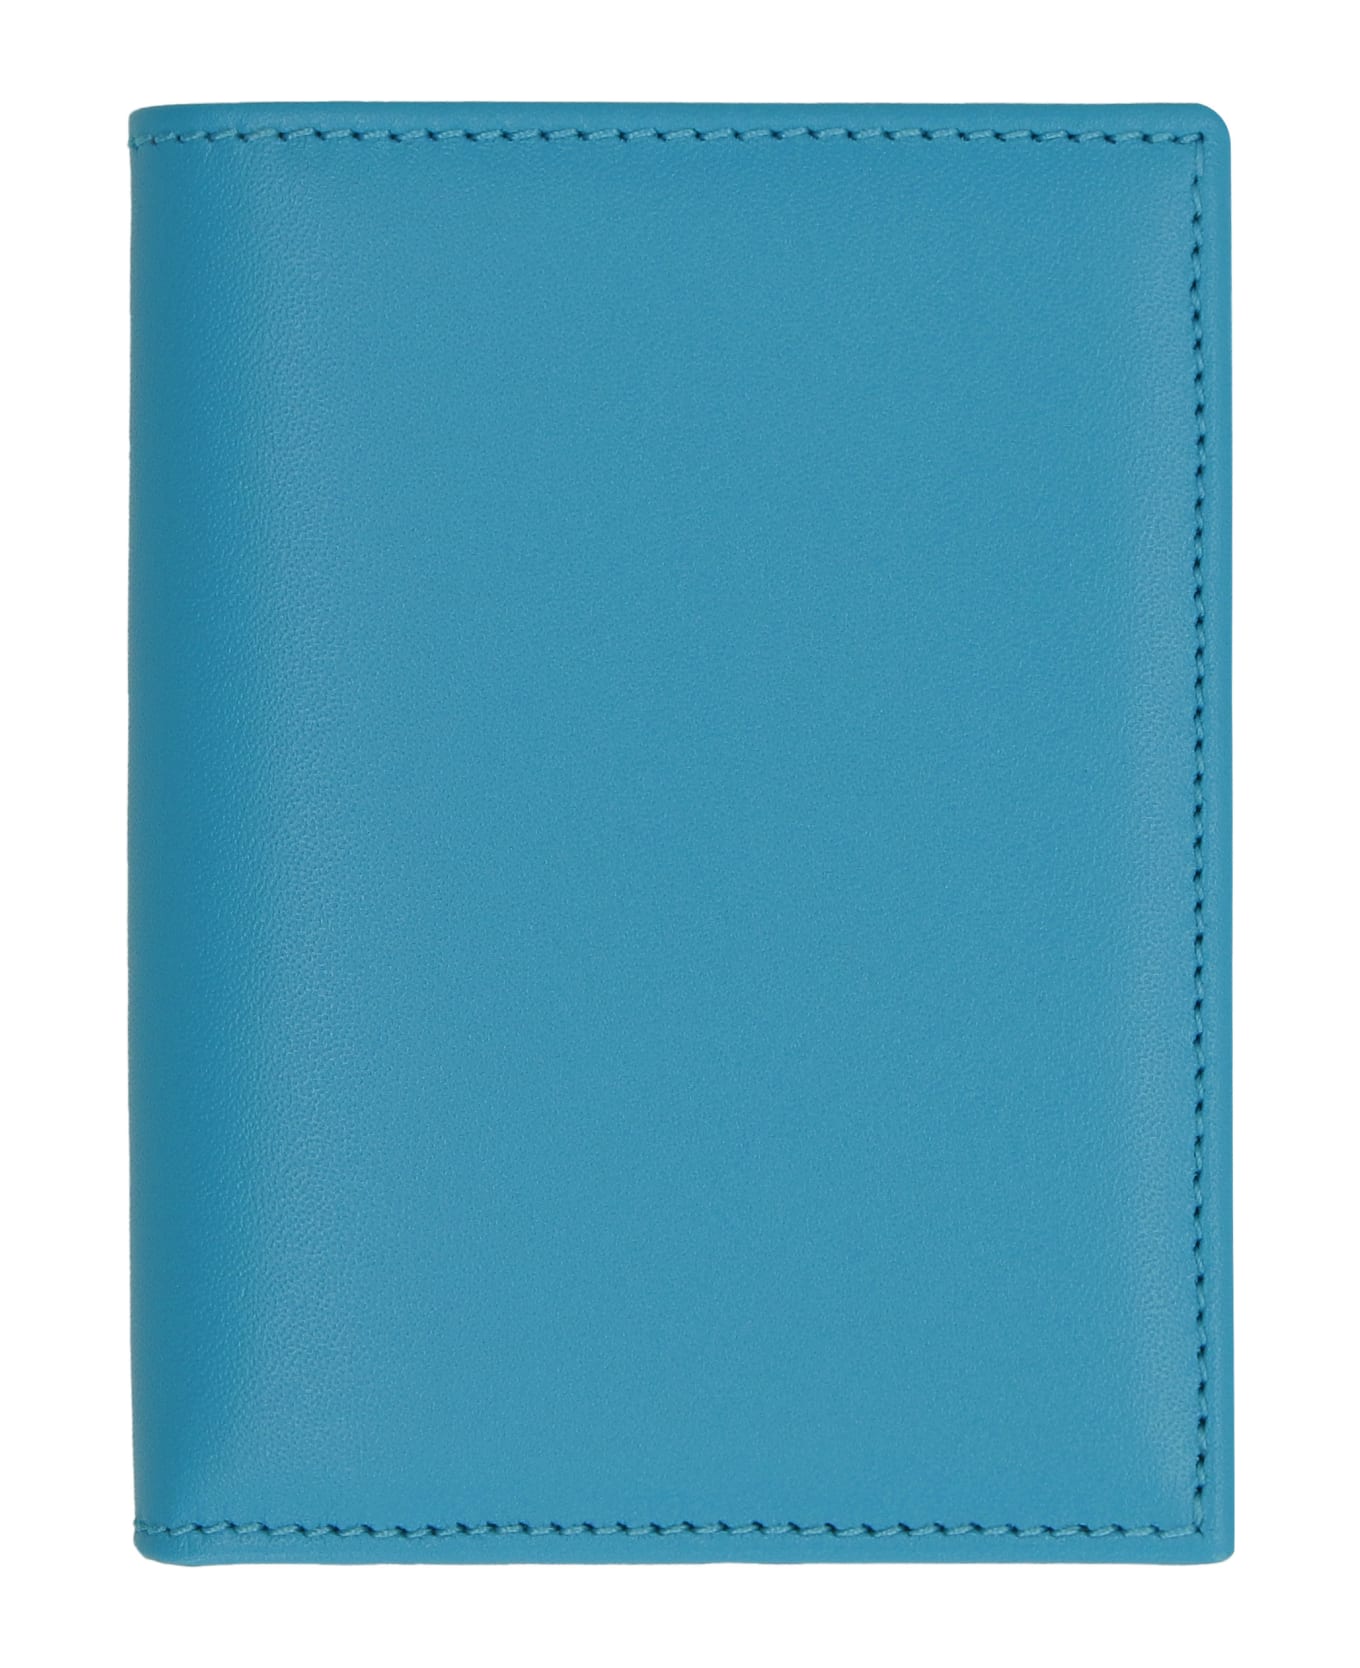 Comme des Garçons Wallet Leather Card Holder - Light Blue